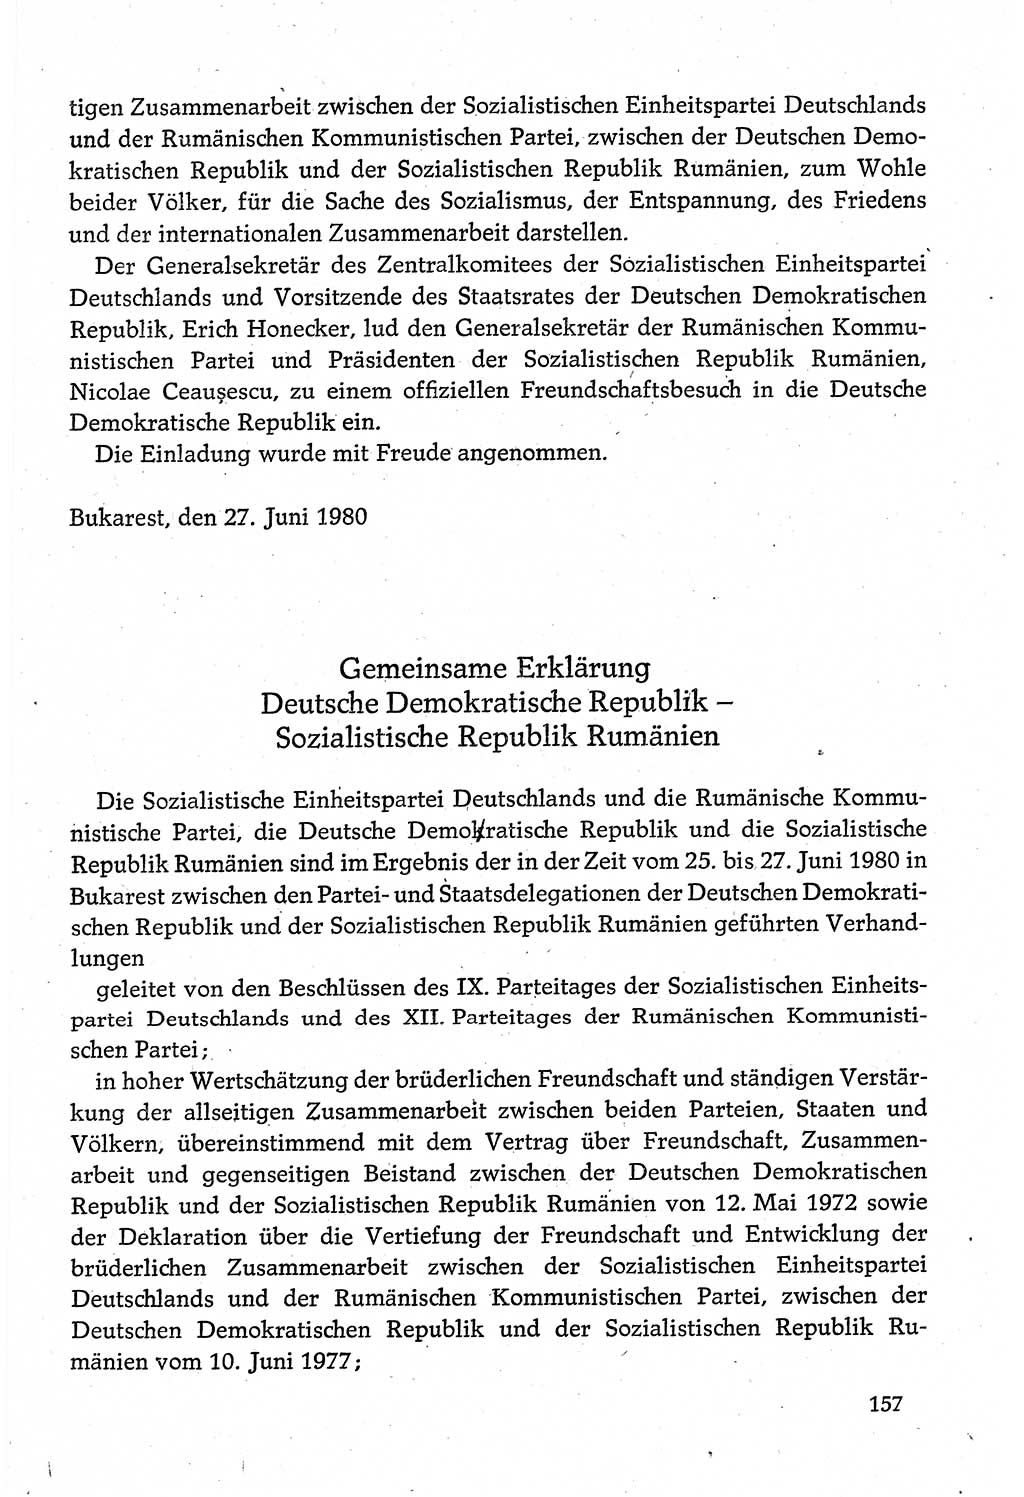 Dokumente der Sozialistischen Einheitspartei Deutschlands (SED) [Deutsche Demokratische Republik (DDR)] 1980-1981, Seite 157 (Dok. SED DDR 1980-1981, S. 157)